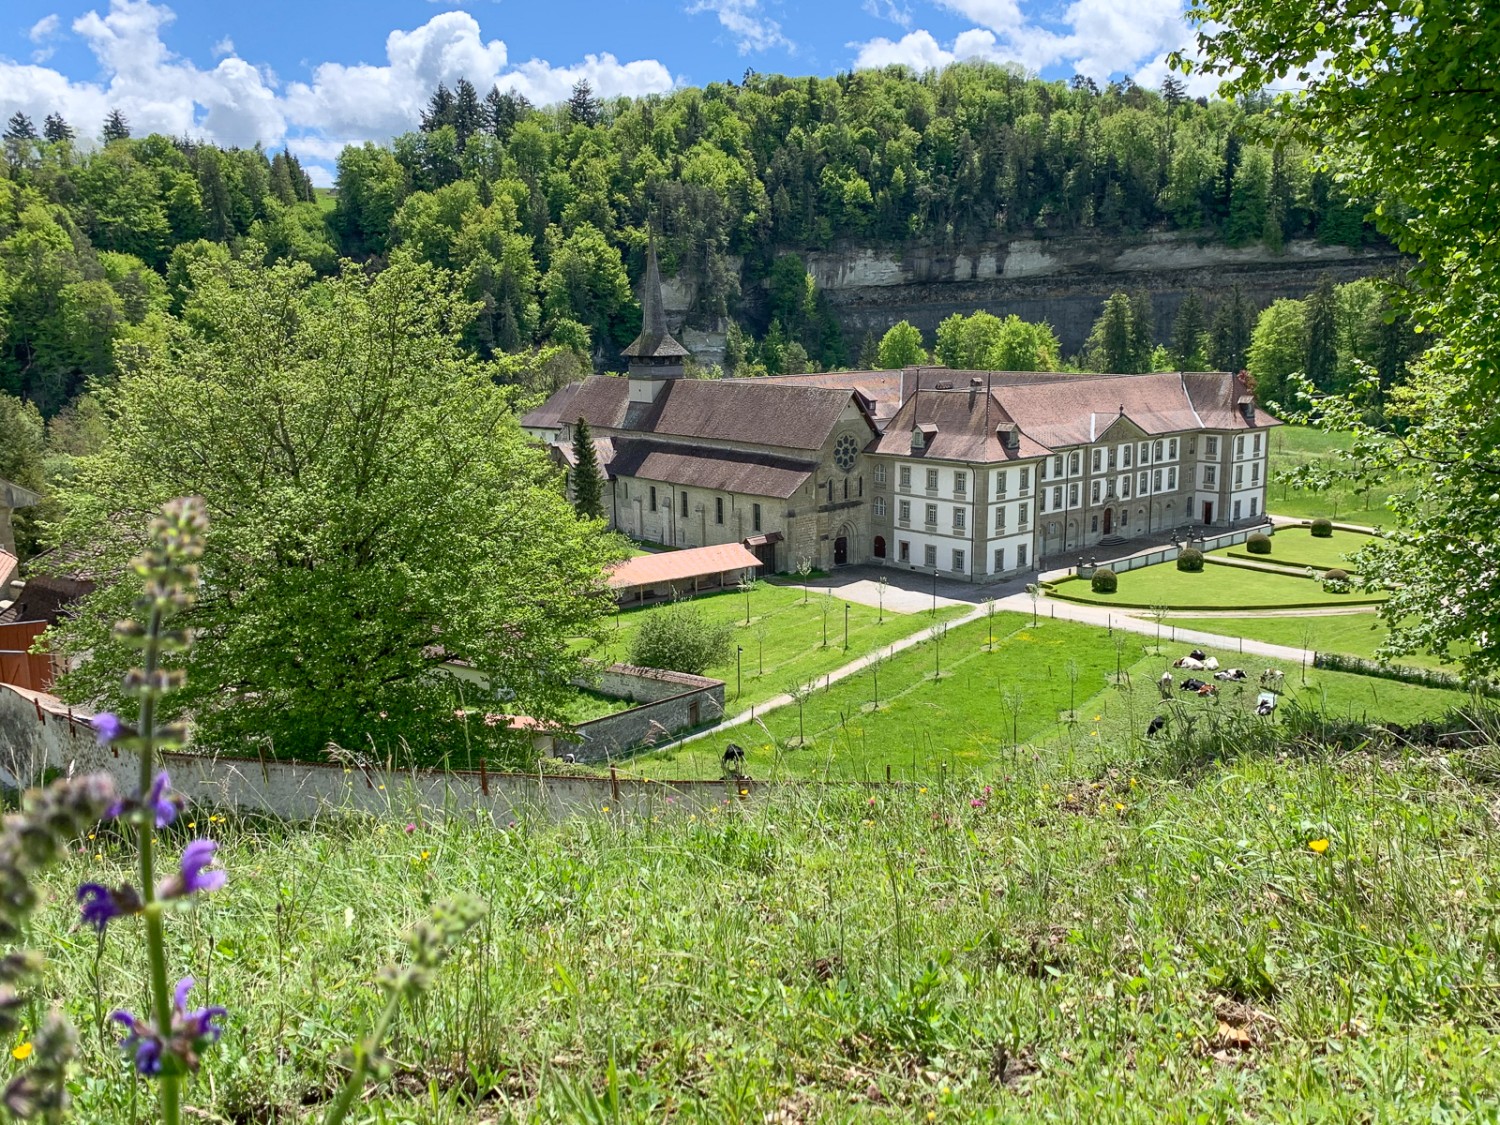 Kurz nach dem Institut Agricole Grangeneuve erhascht man einen bezaubernden Ausblick auf das Kloster Hauterive. Bild: Monika Leuenberger